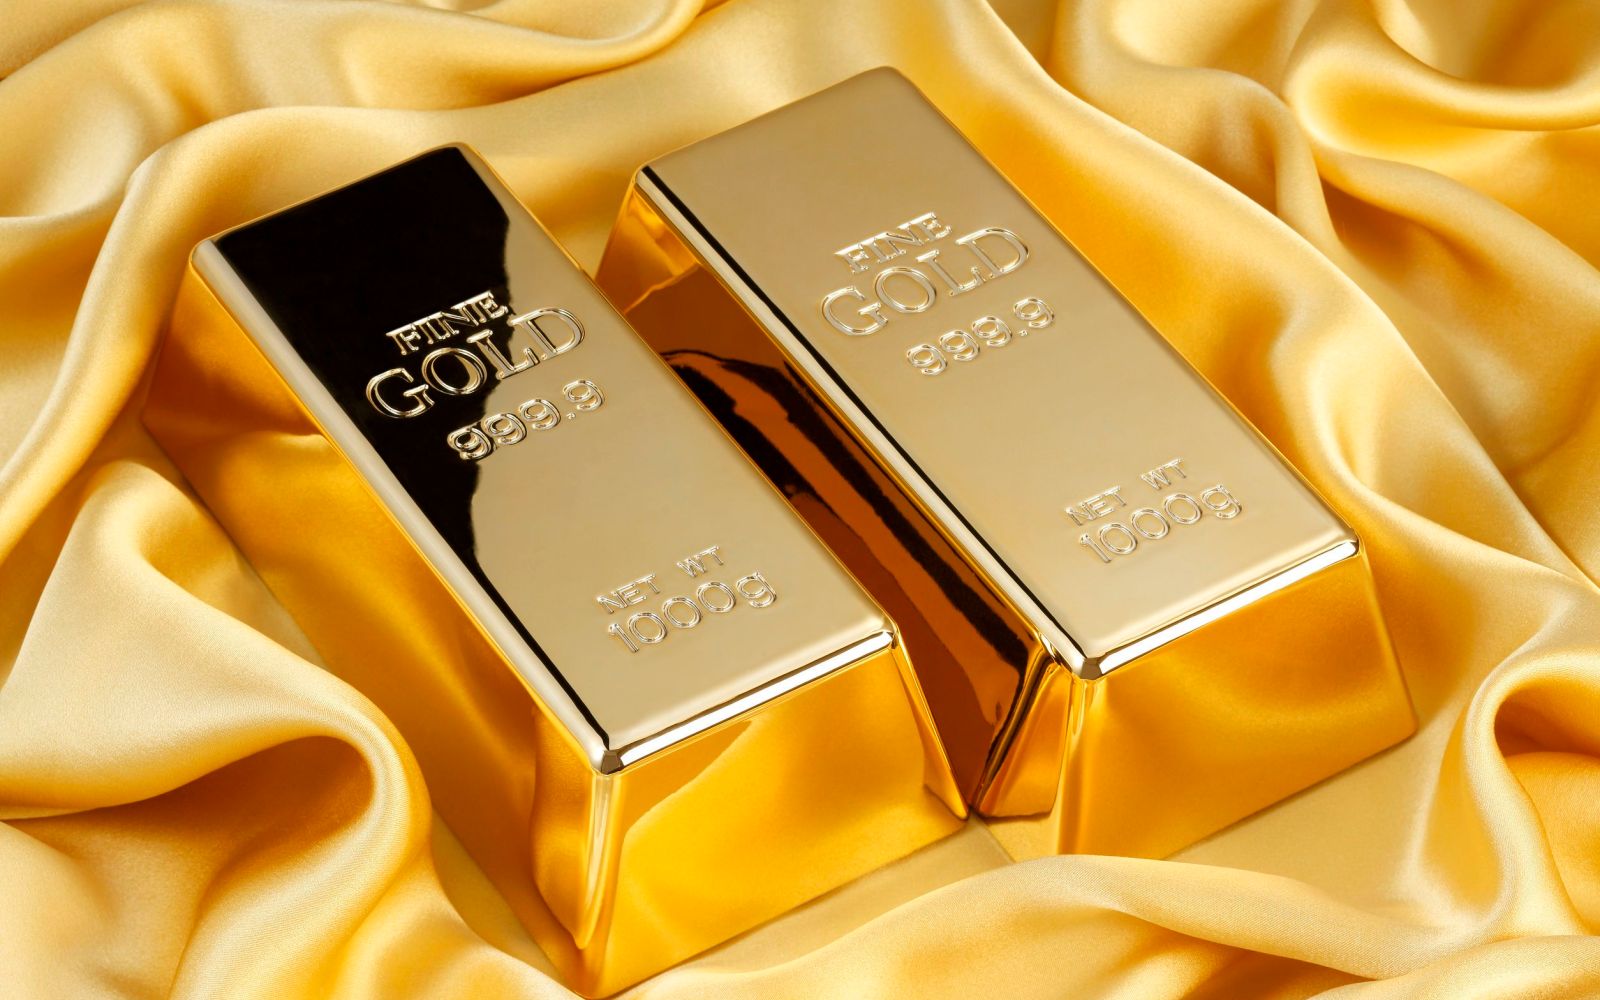 نشتري دهب دلوقتي ولا نستنى .. توقعات الخبراء حول أسعار الذهب في مصر خلال الفترة المقبلة ومفاجأة كبرى للمستثمرين